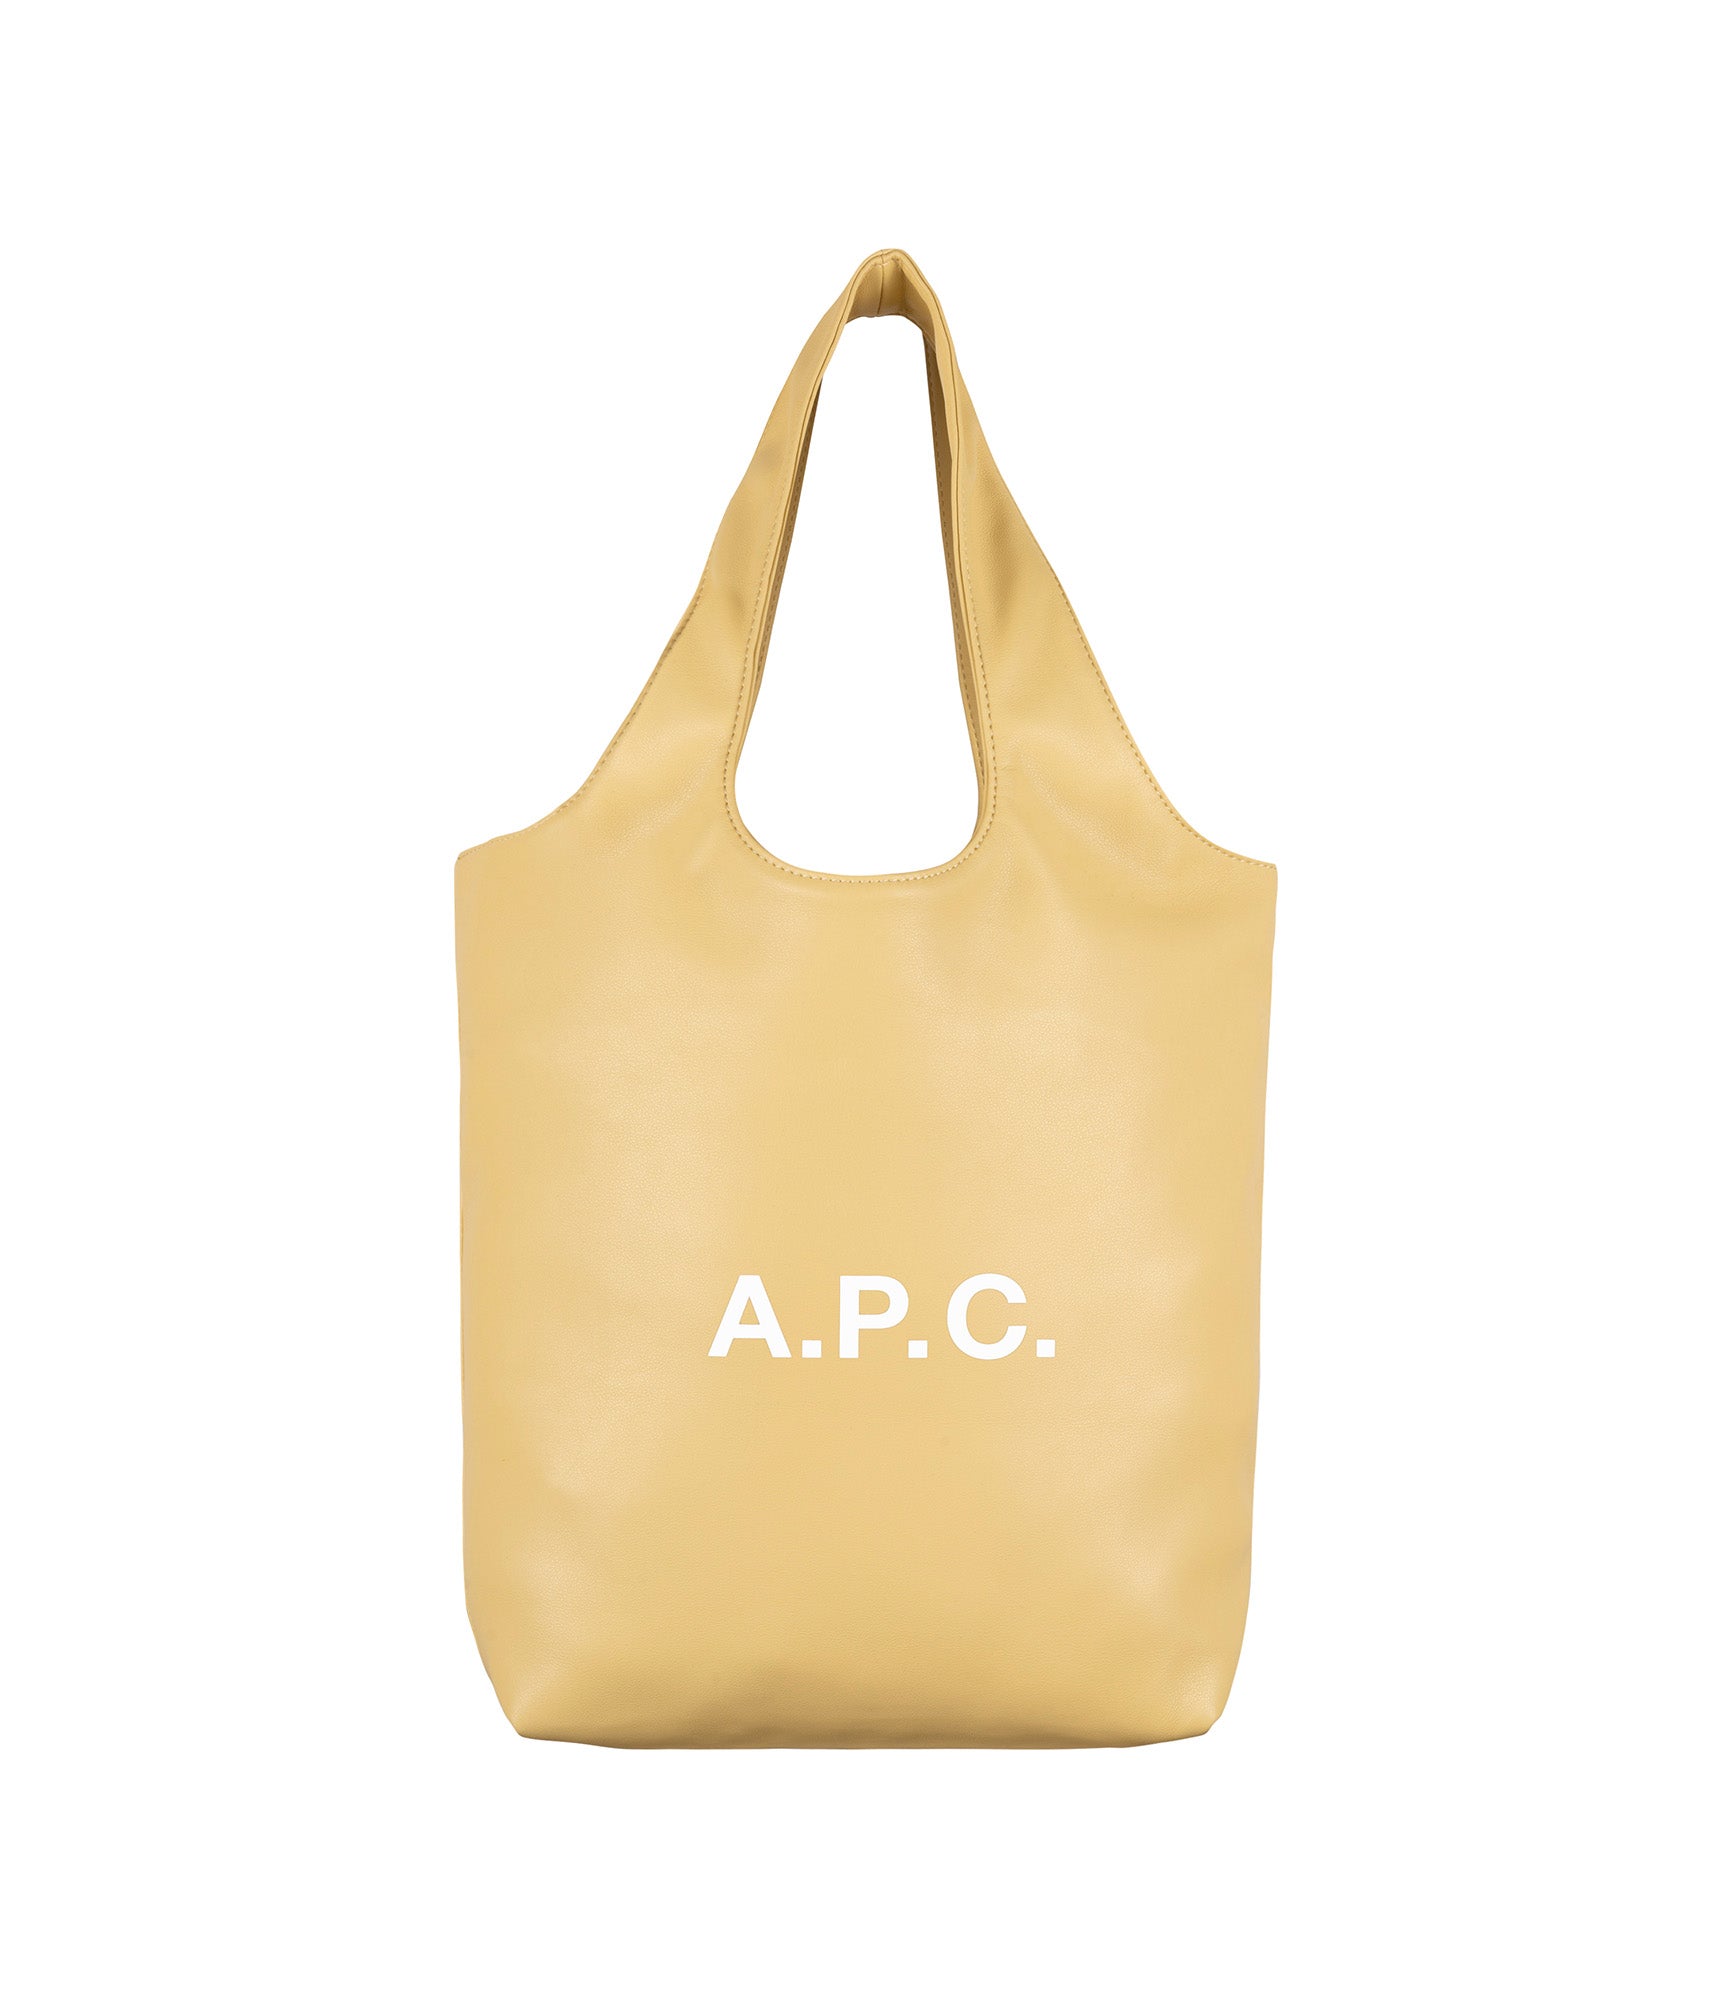 Ninon small tote bag - A.P.C.